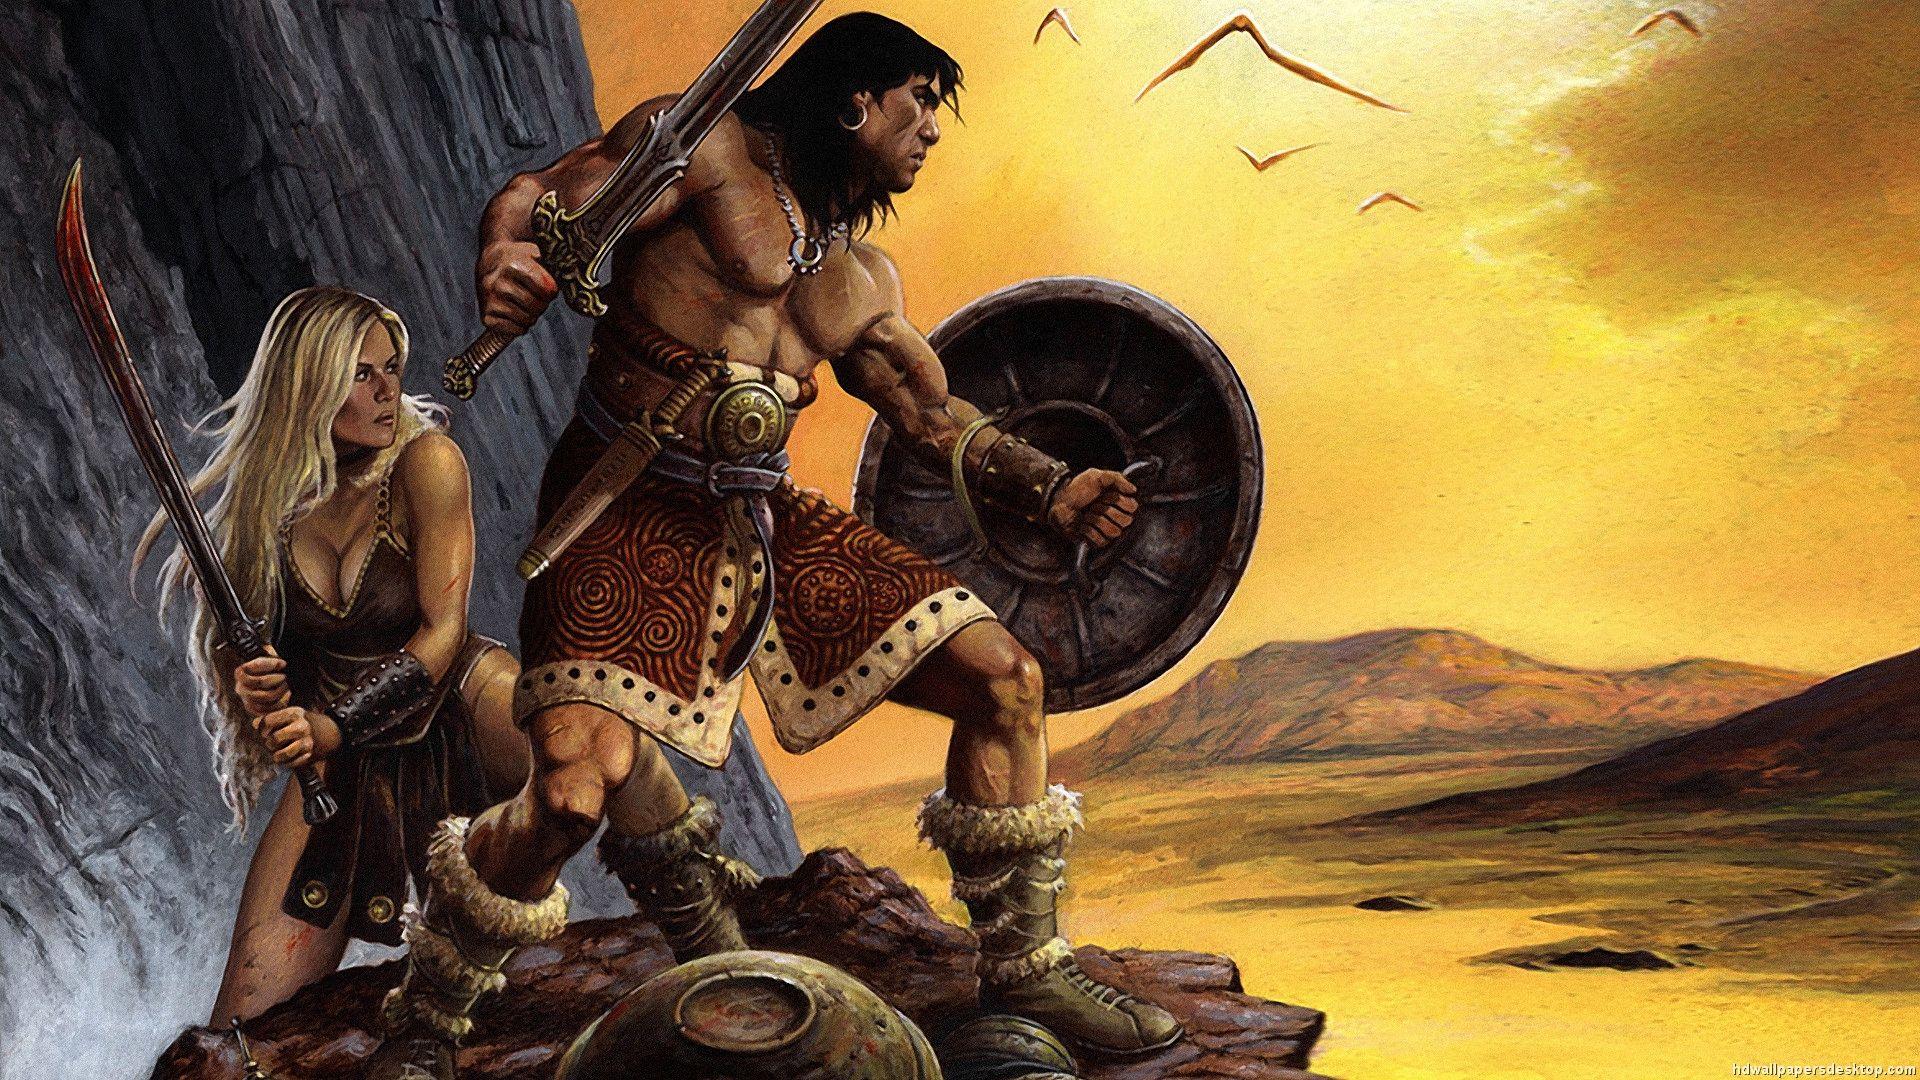 Conan the Barbarian Wallpaper (1920×1080). Conan